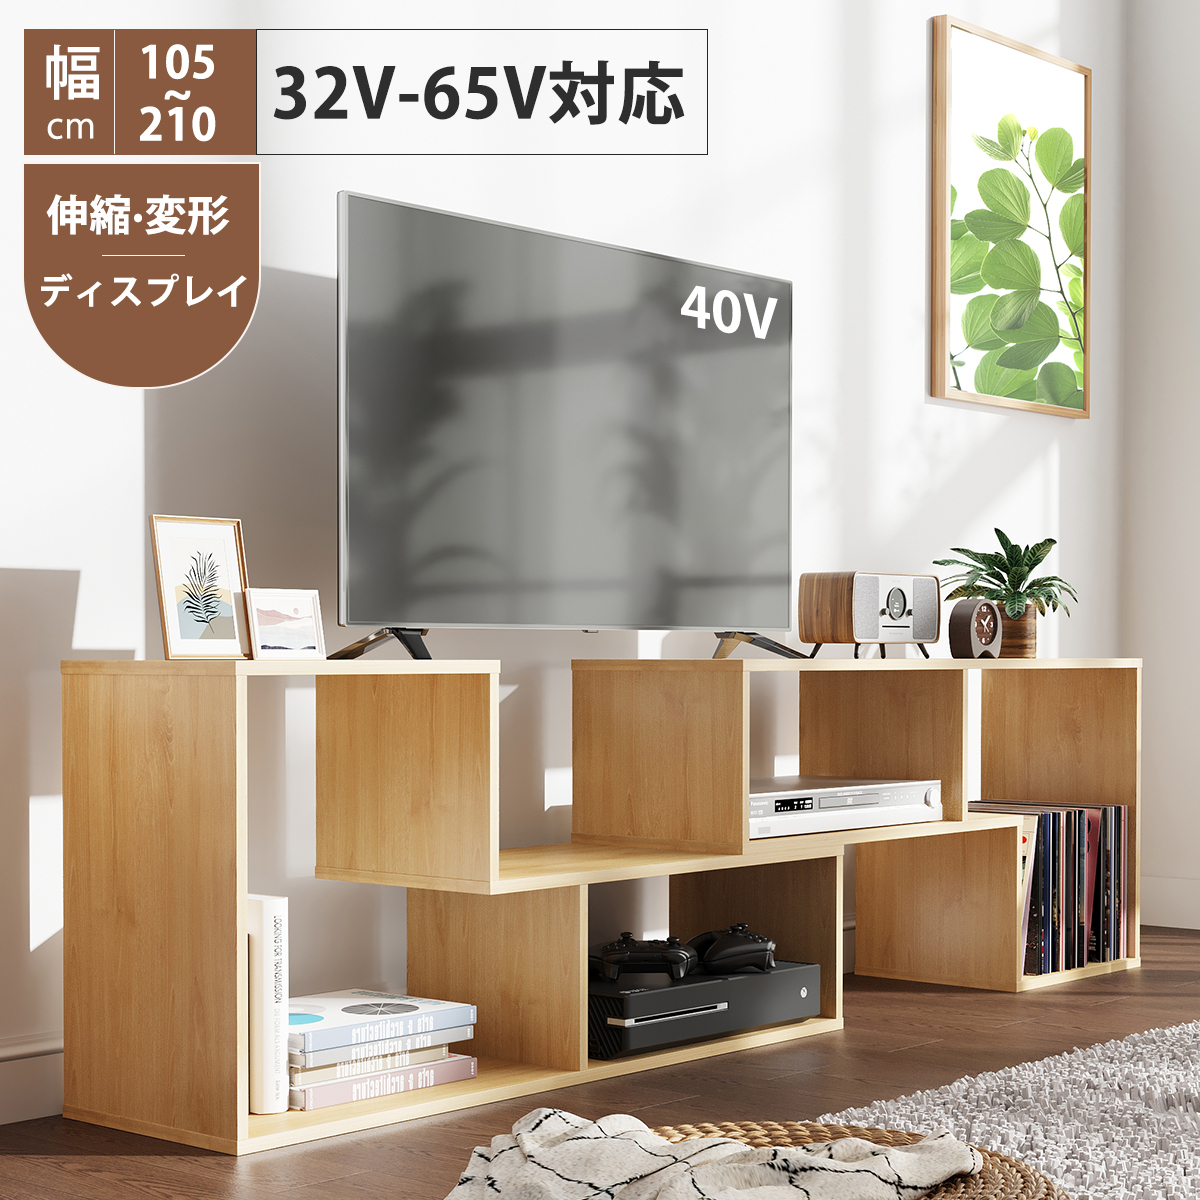 カテゴリー 伸縮TV台ホワイト 型 インチ TV 対応 xQK1p-m27499775076